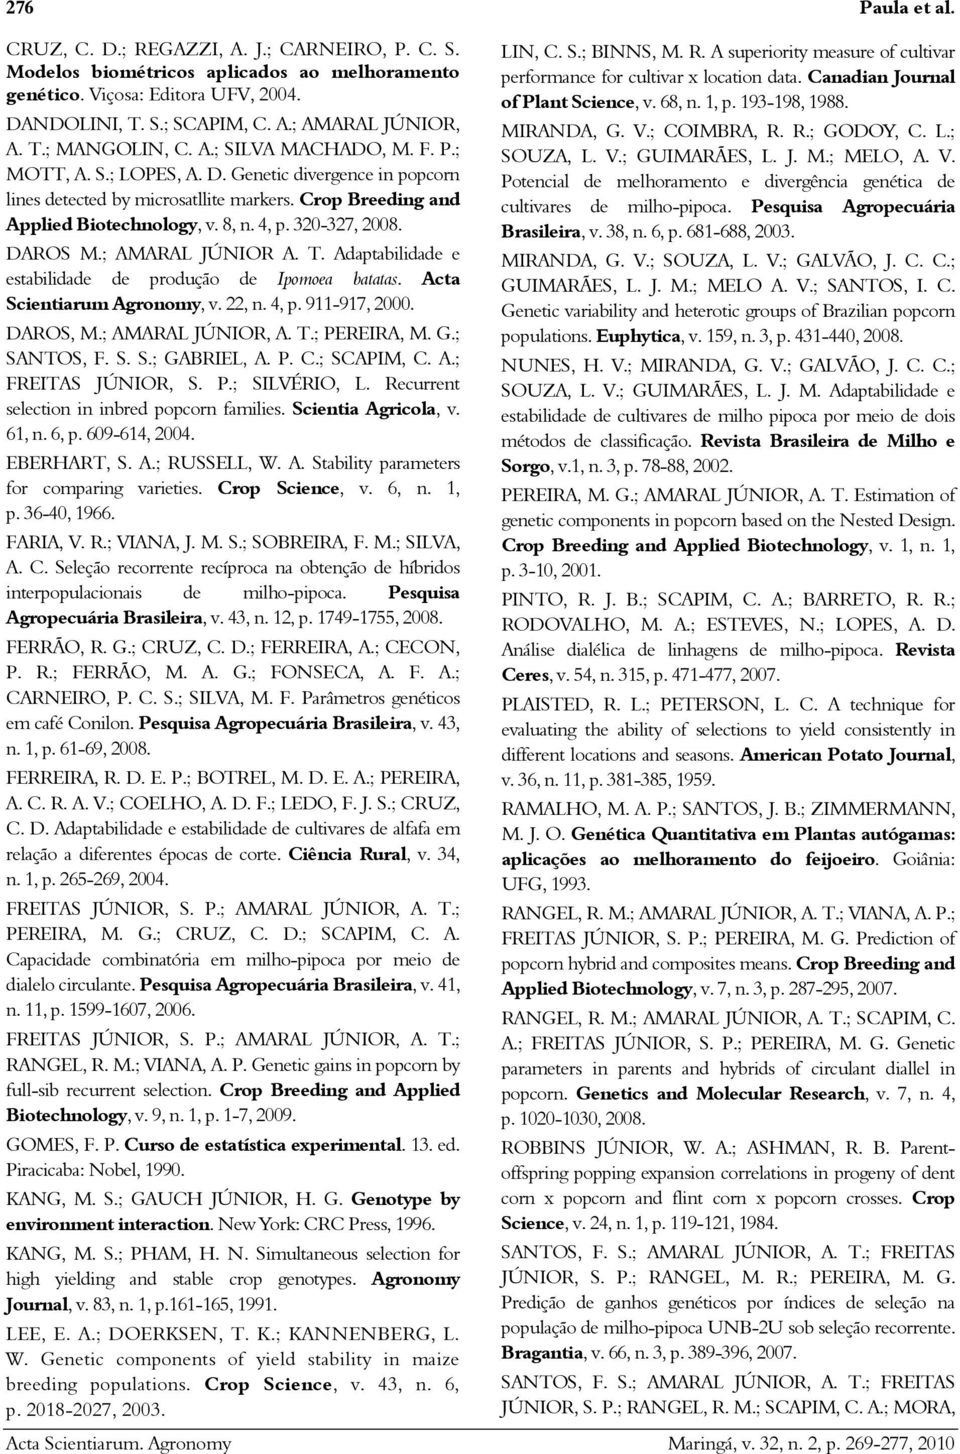 320-327, 2008. DAROS M.; AMARAL JÚNIOR A. T. Adaptabilidade e estabilidade de produção de Ipomoea batatas. Acta Scientiarum Agronomy, v. 22, n. 4, p. 911-917, 2000. DAROS, M.; AMARAL JÚNIOR, A. T.; PEREIRA, M.